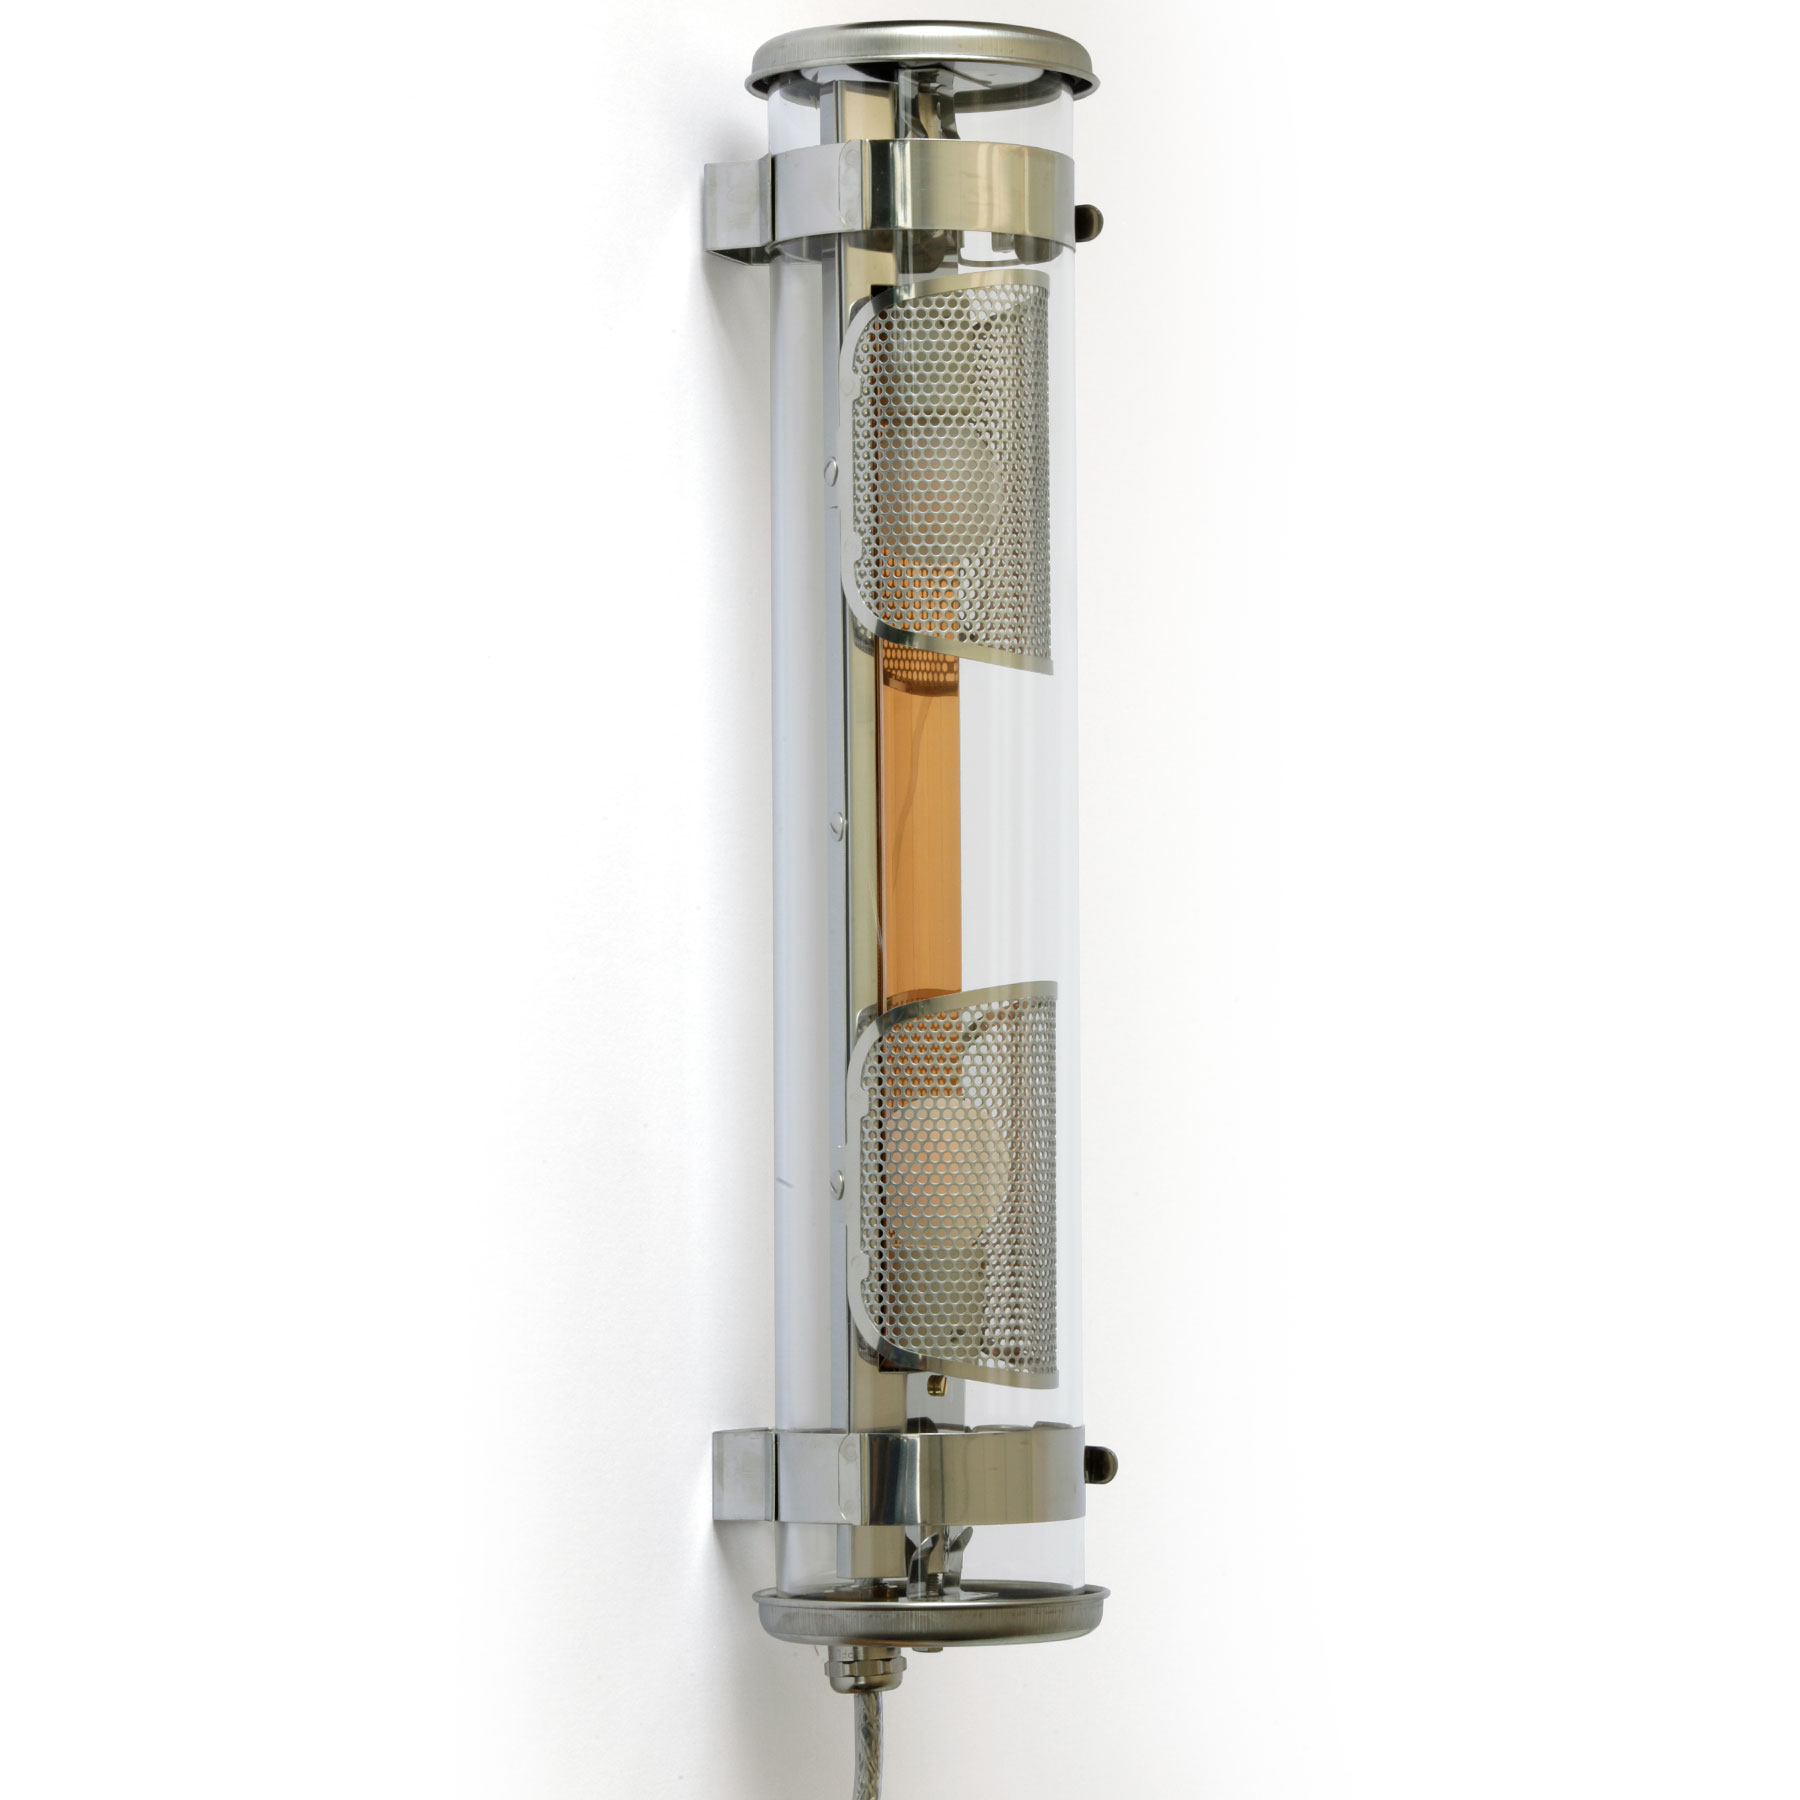 Universell einsetzbare Glasröhren-Leuchte MUSSET mit IP68